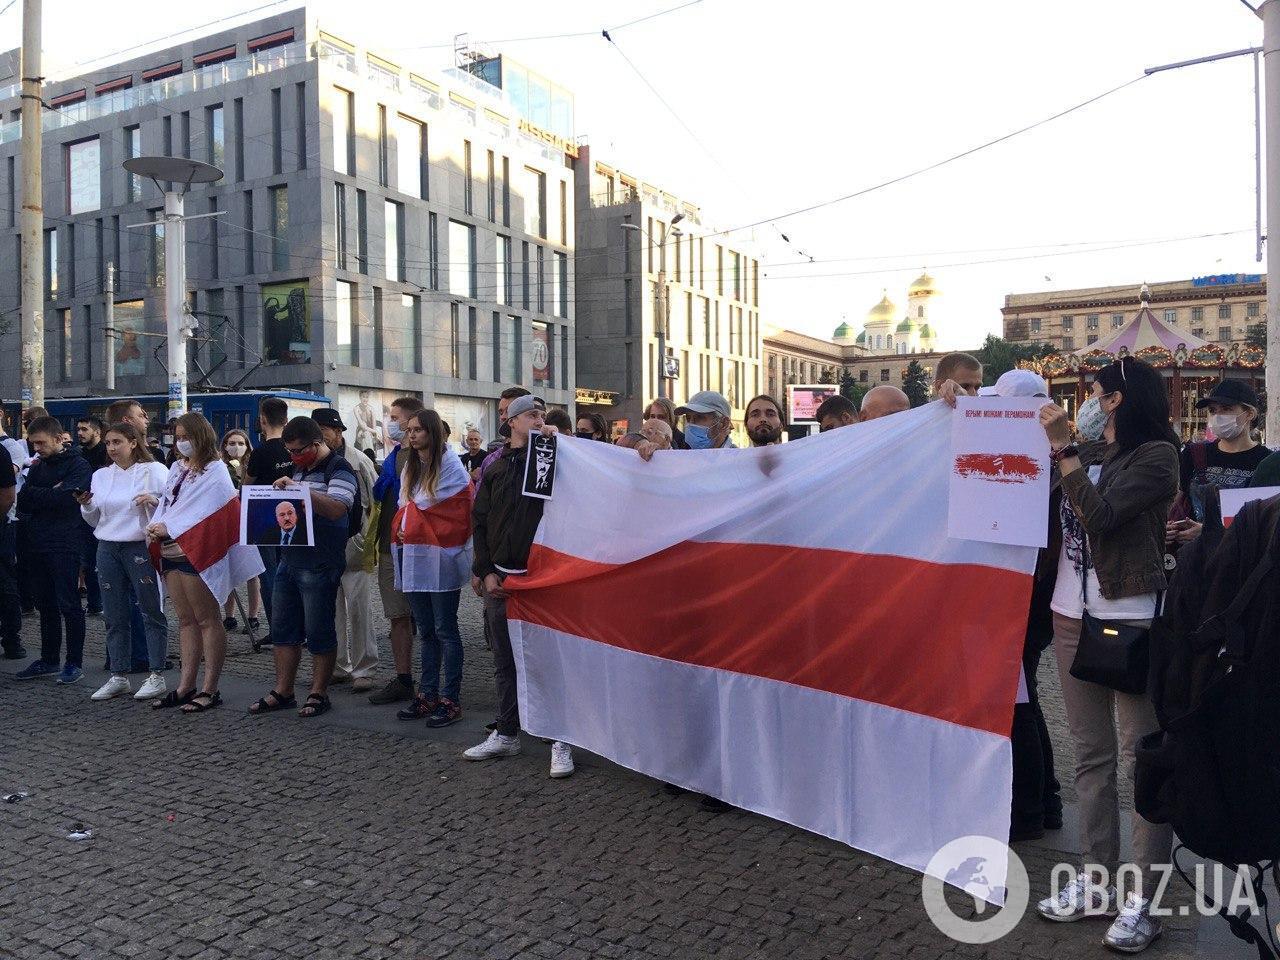 Активисты развернули большой флаг